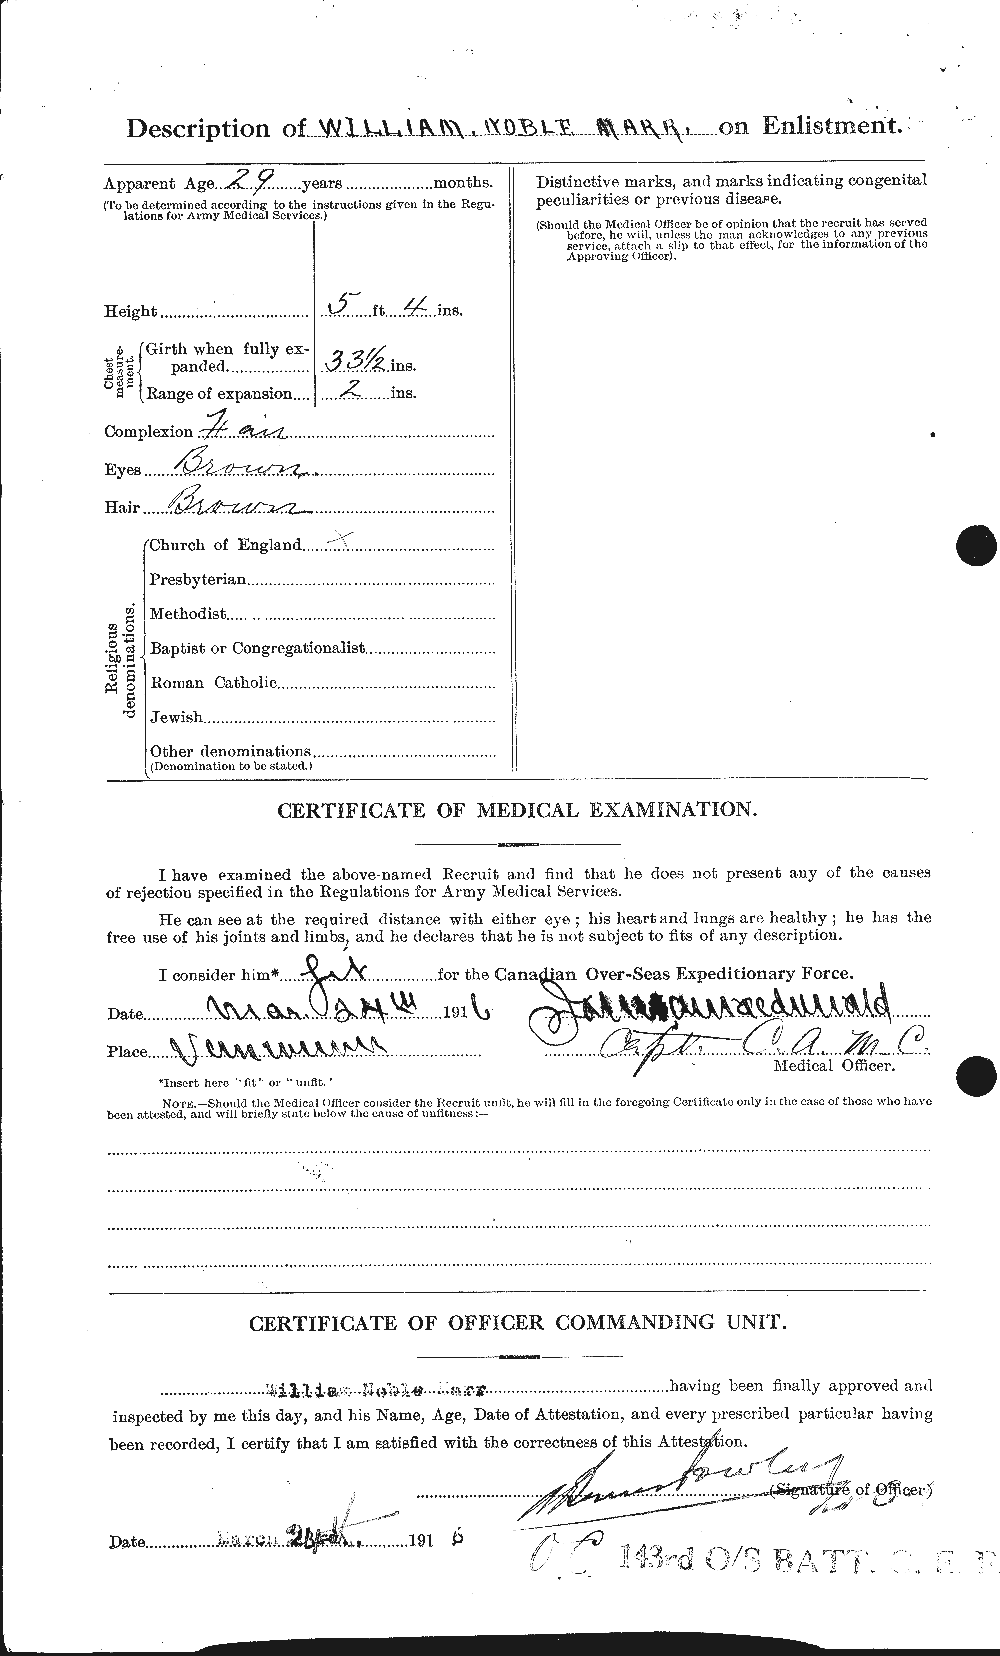 Dossiers du Personnel de la Première Guerre mondiale - CEC 485697b